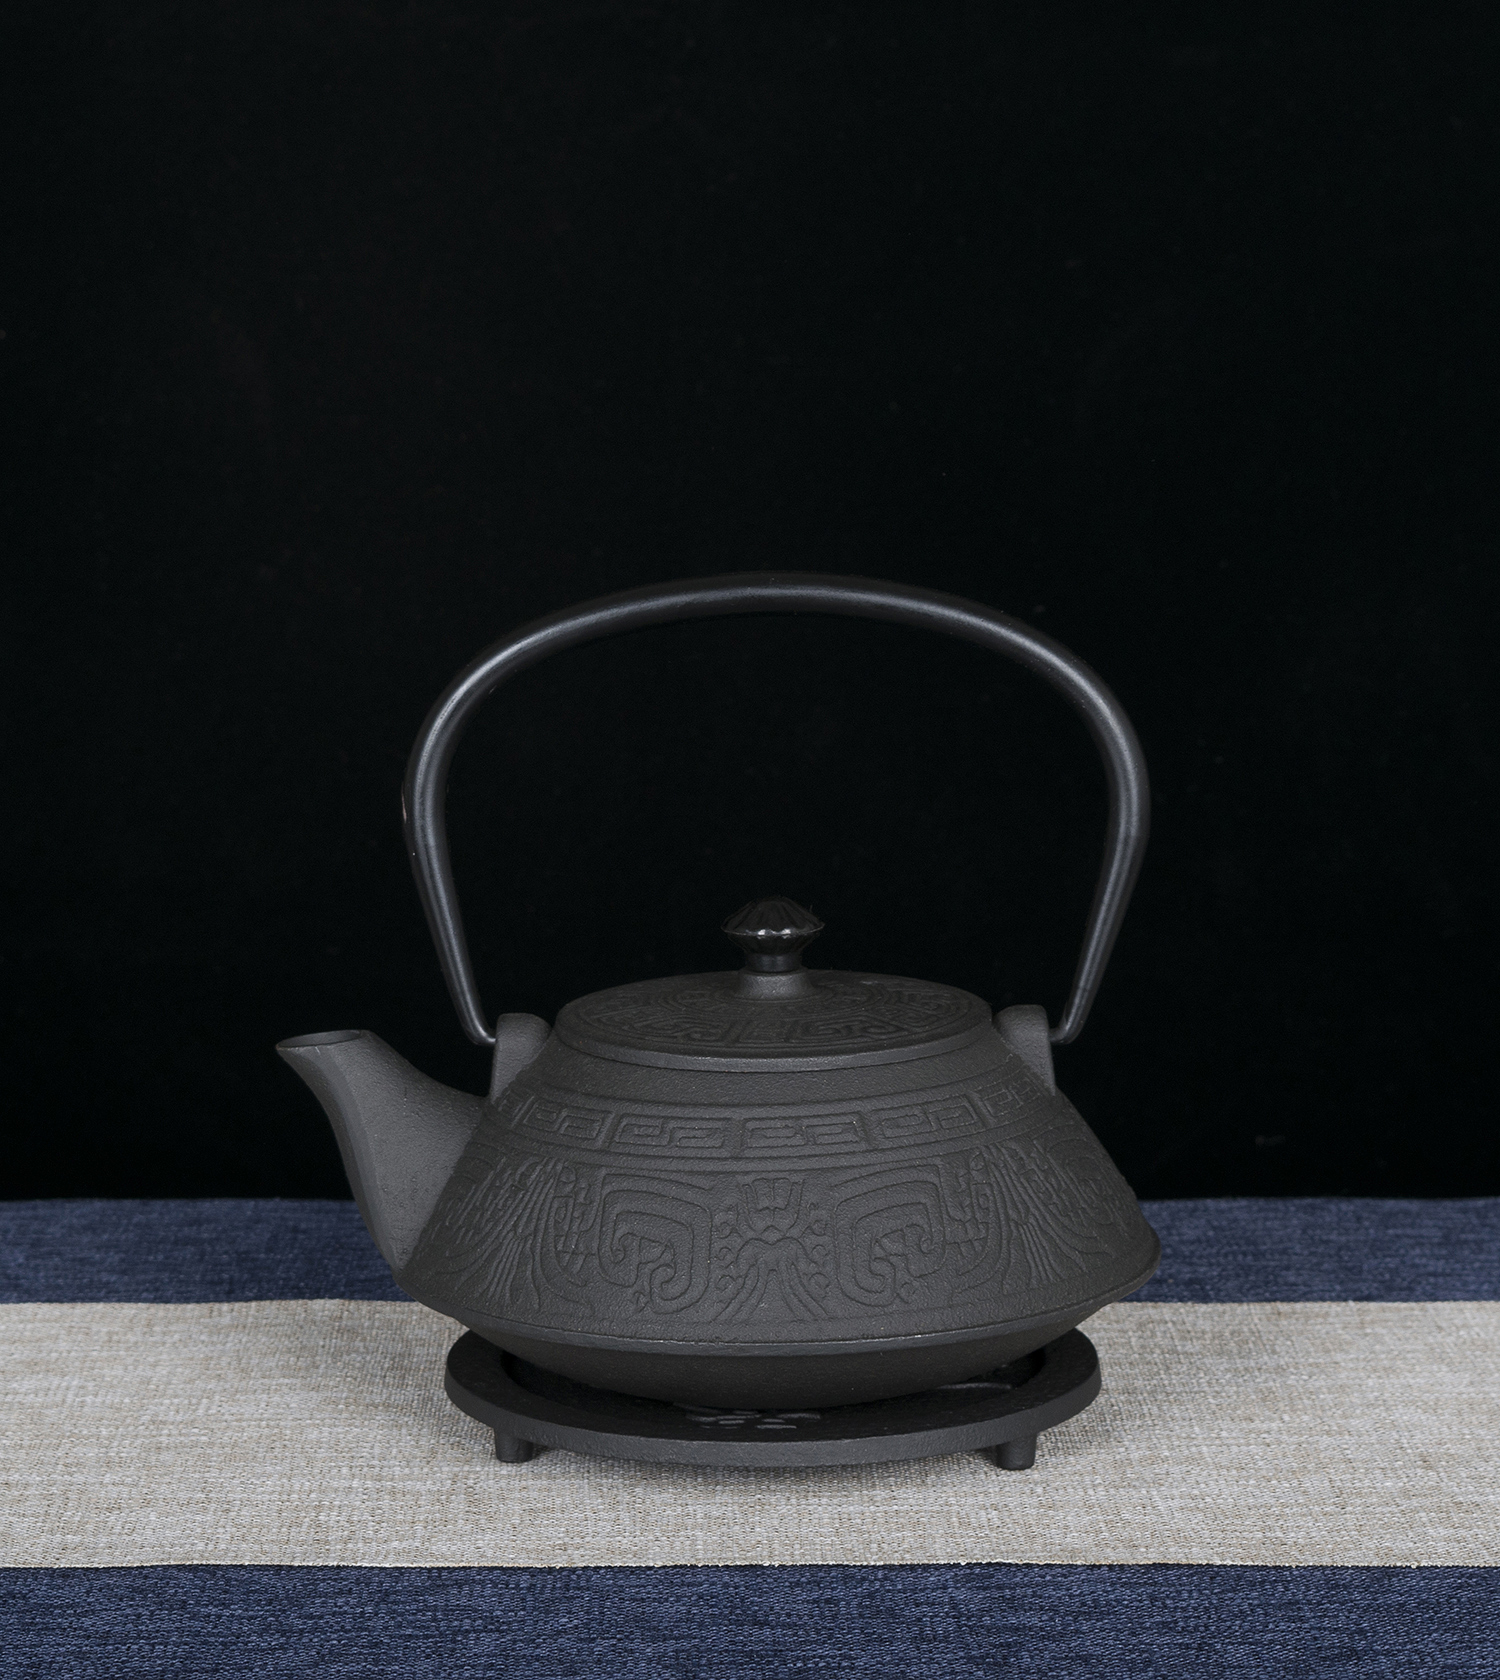 进口煮茶机0.8L 烧水壶铸铁家用煮泡茶手工壶无涂层生铁壶铁杯套装